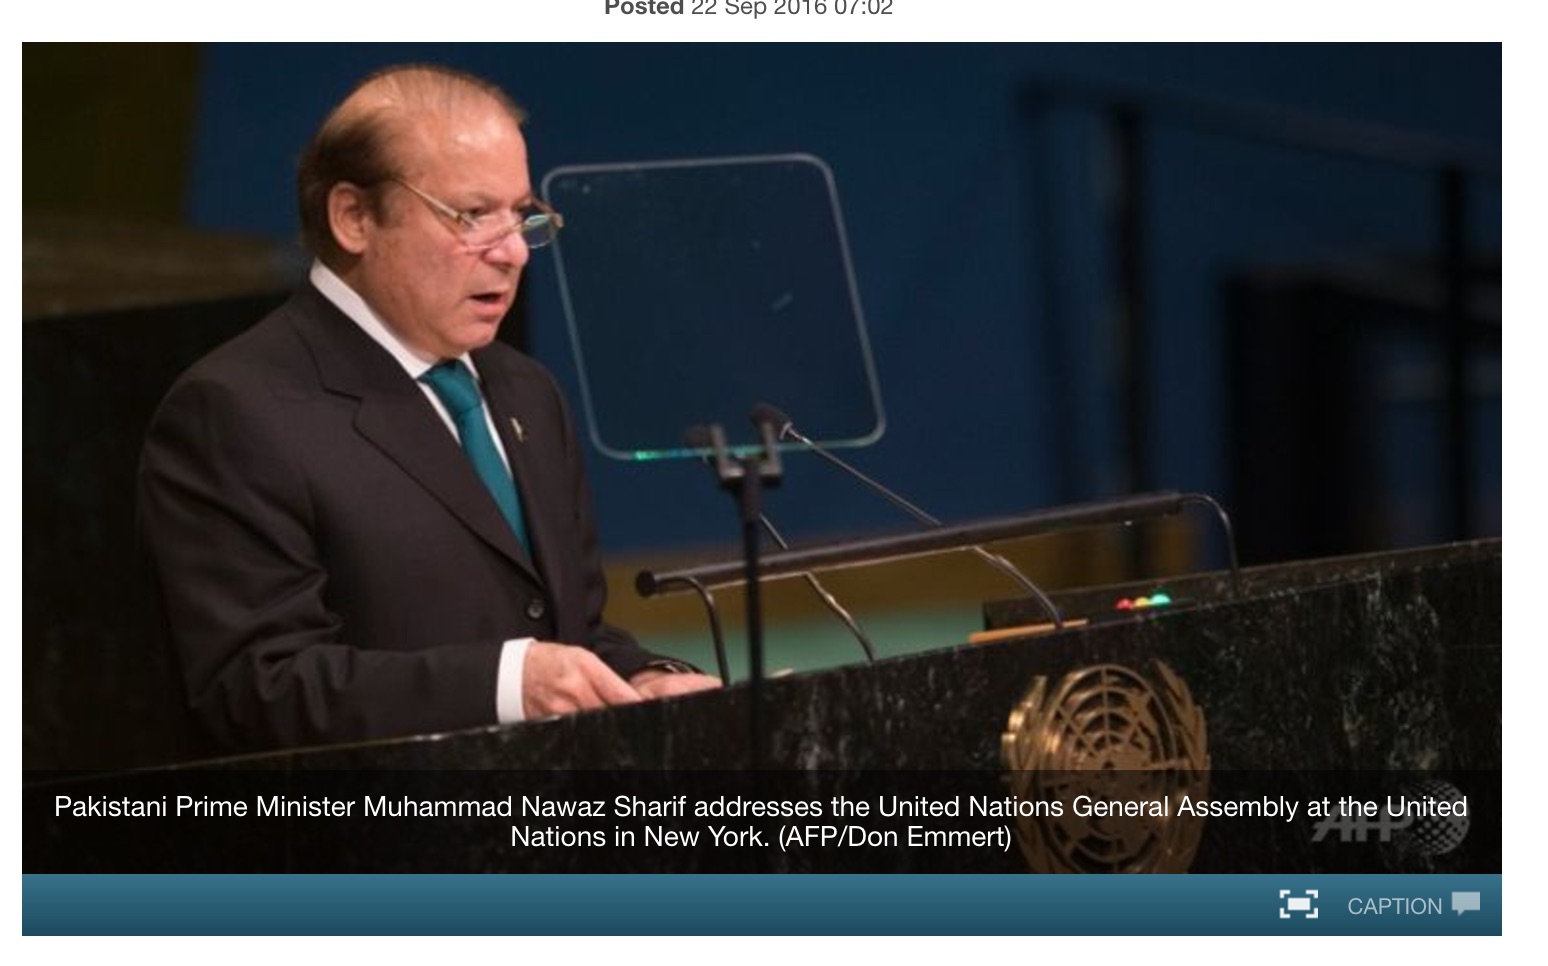 L'Inde et le Pakistan se sont violemment opposés dans des diatribes verbales lors du sommet de l'ONU. Copie d'écran de Channel News Asia, le 22 septembre 2016.